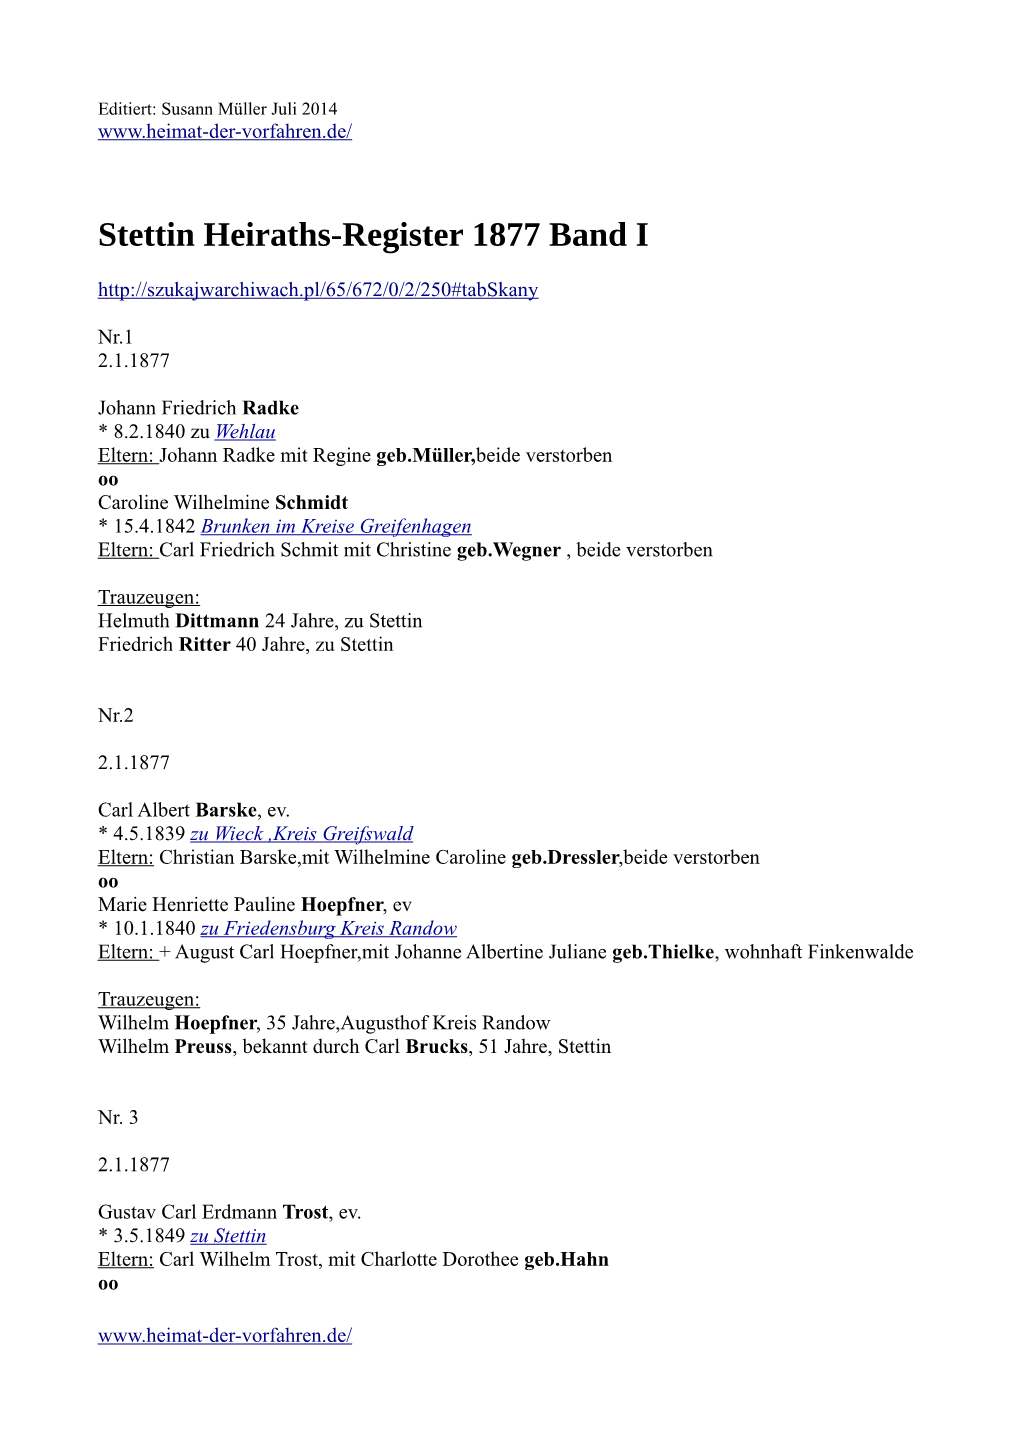 Stettin Heiraths-Register 1877 Band I